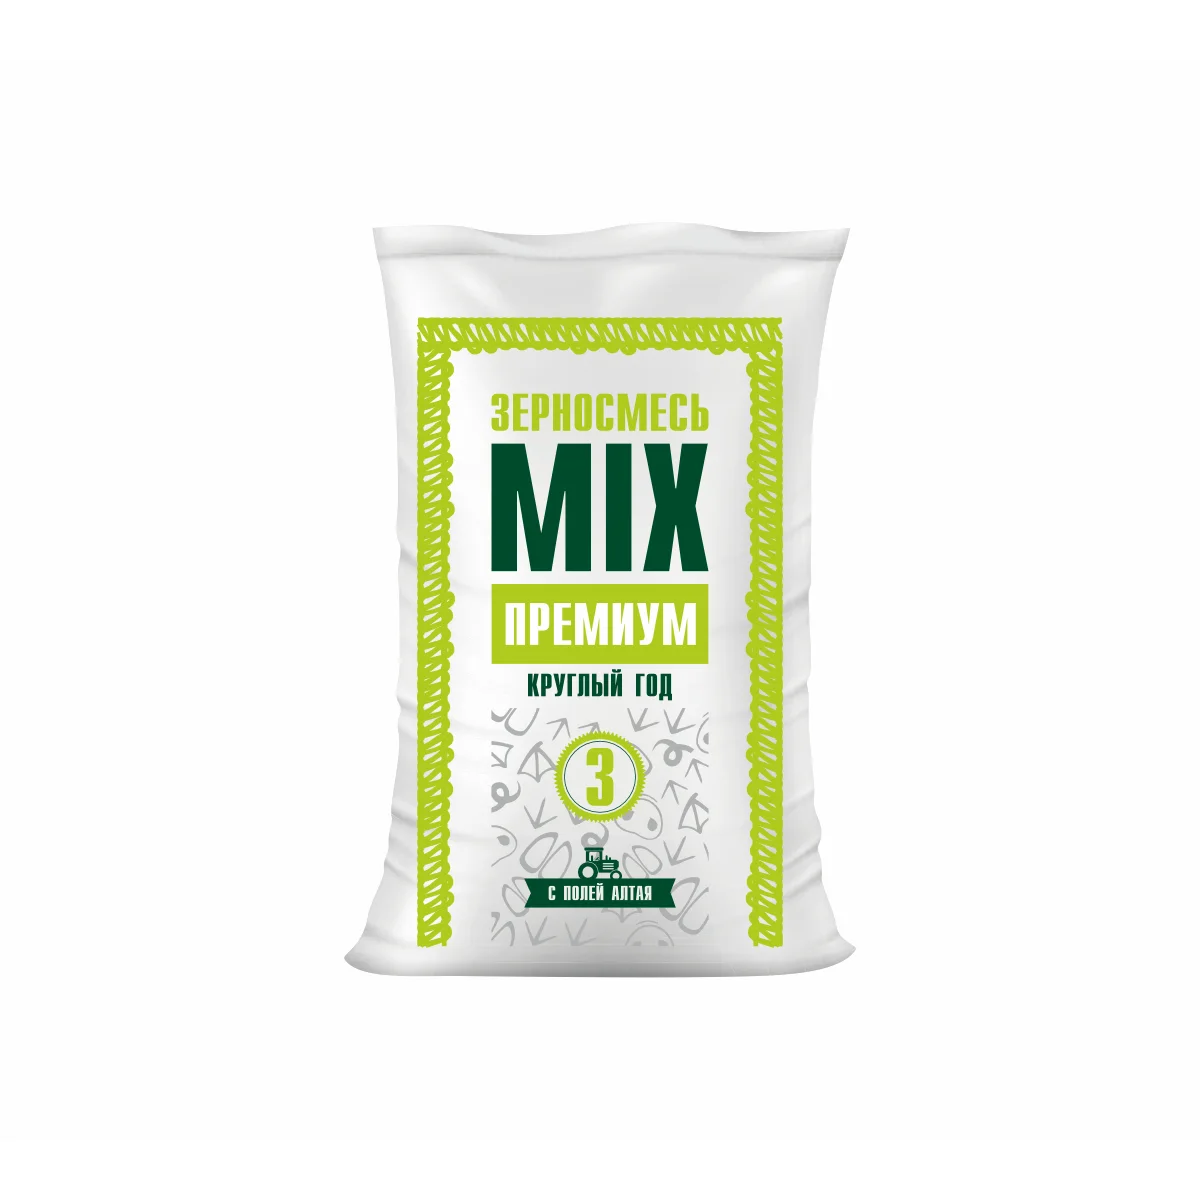 Зерносмесь MIX 3 ПРЕМИУМ (30 кг)